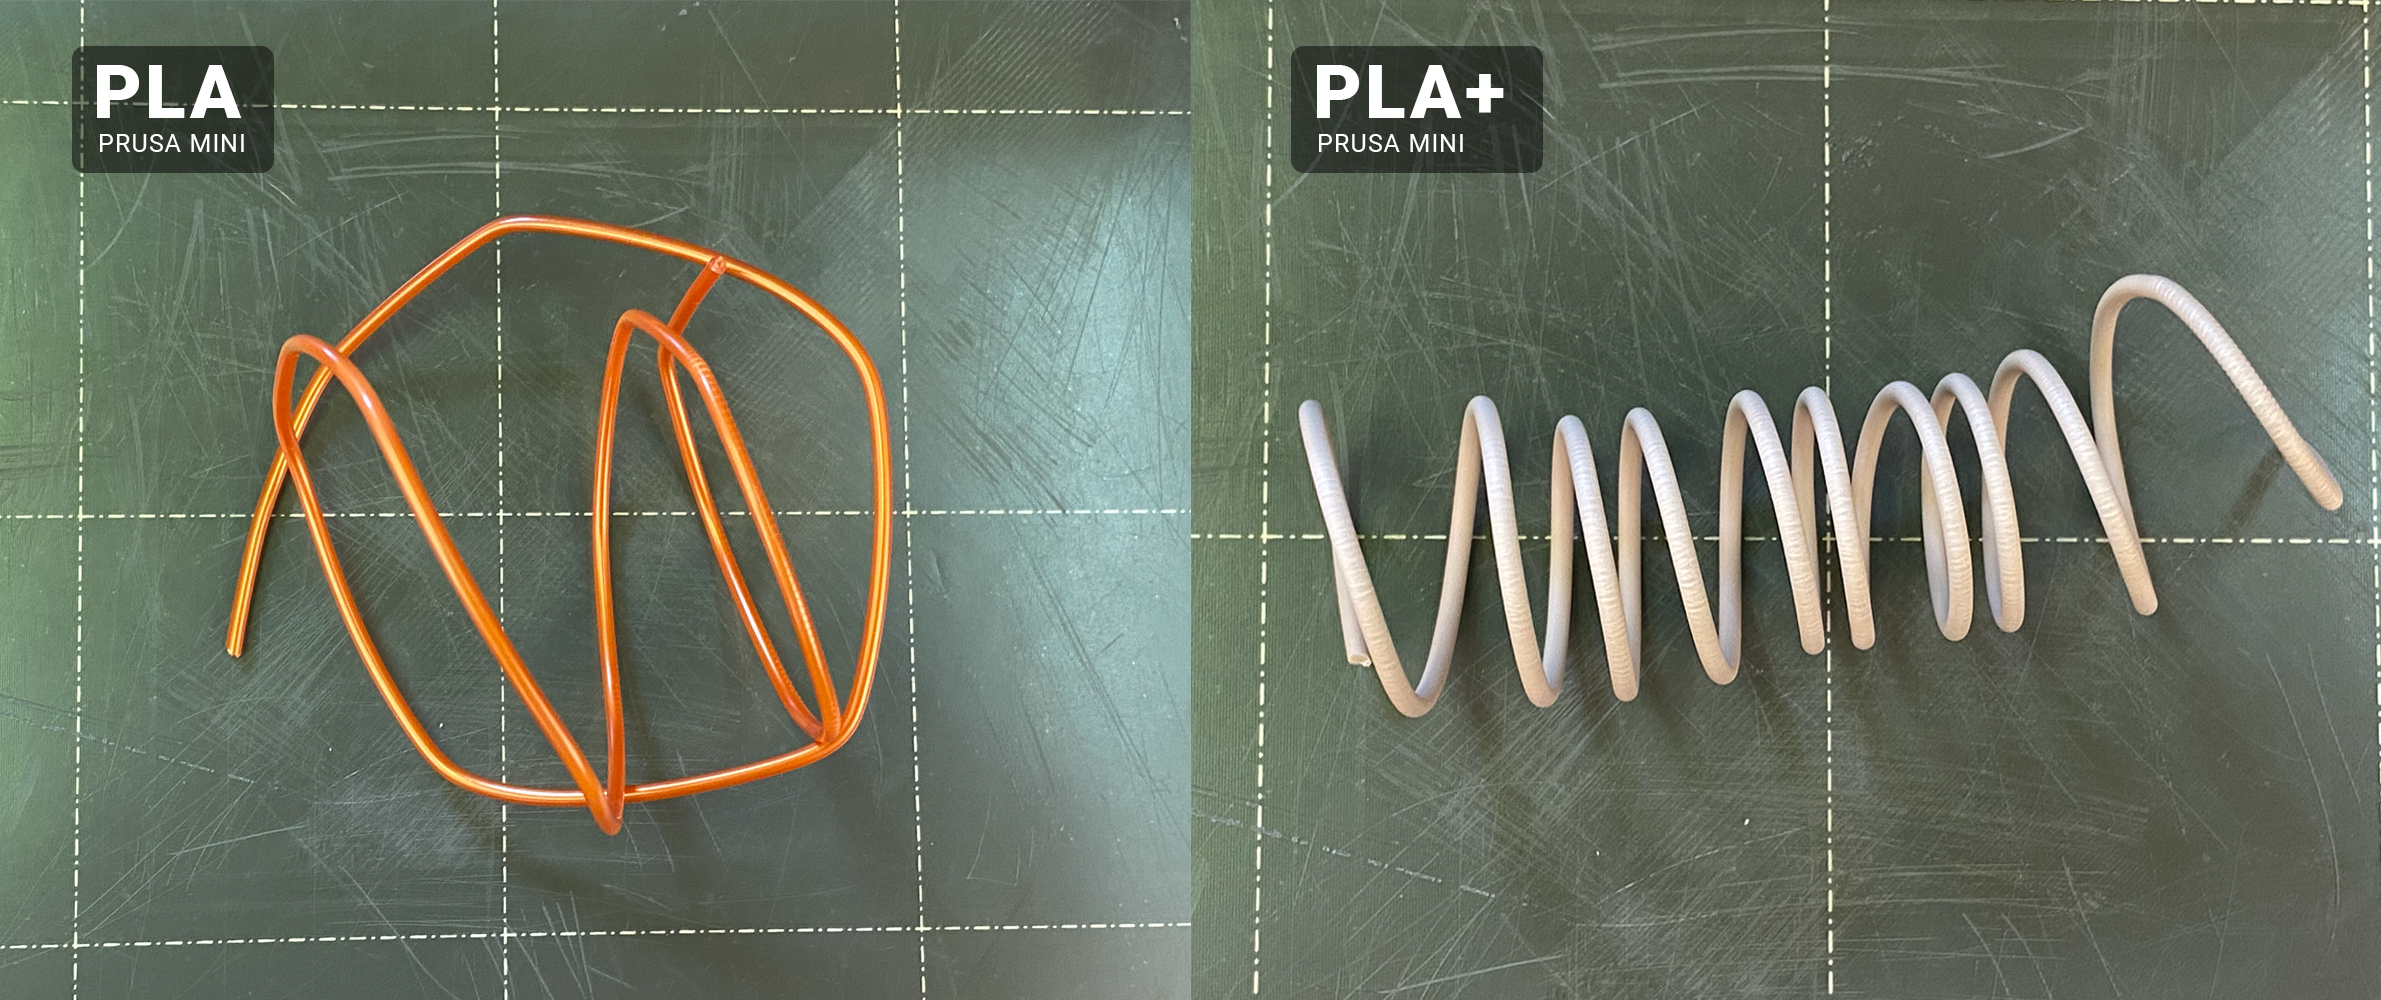 pla filament